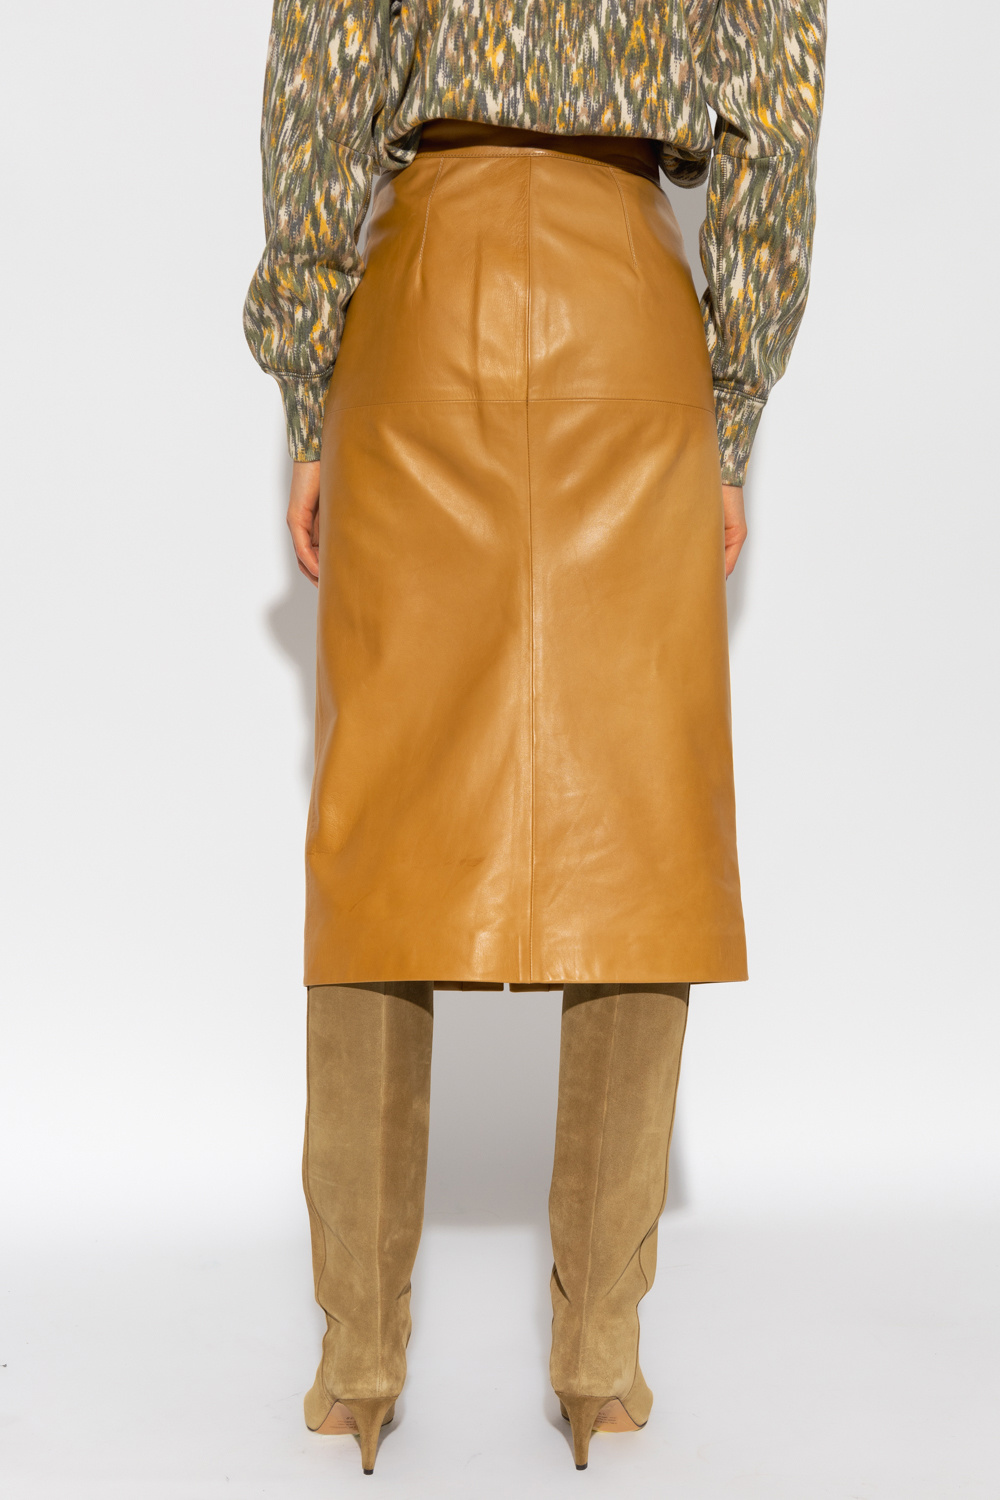 Isabel Marant ‘Blehor’ leather skirt